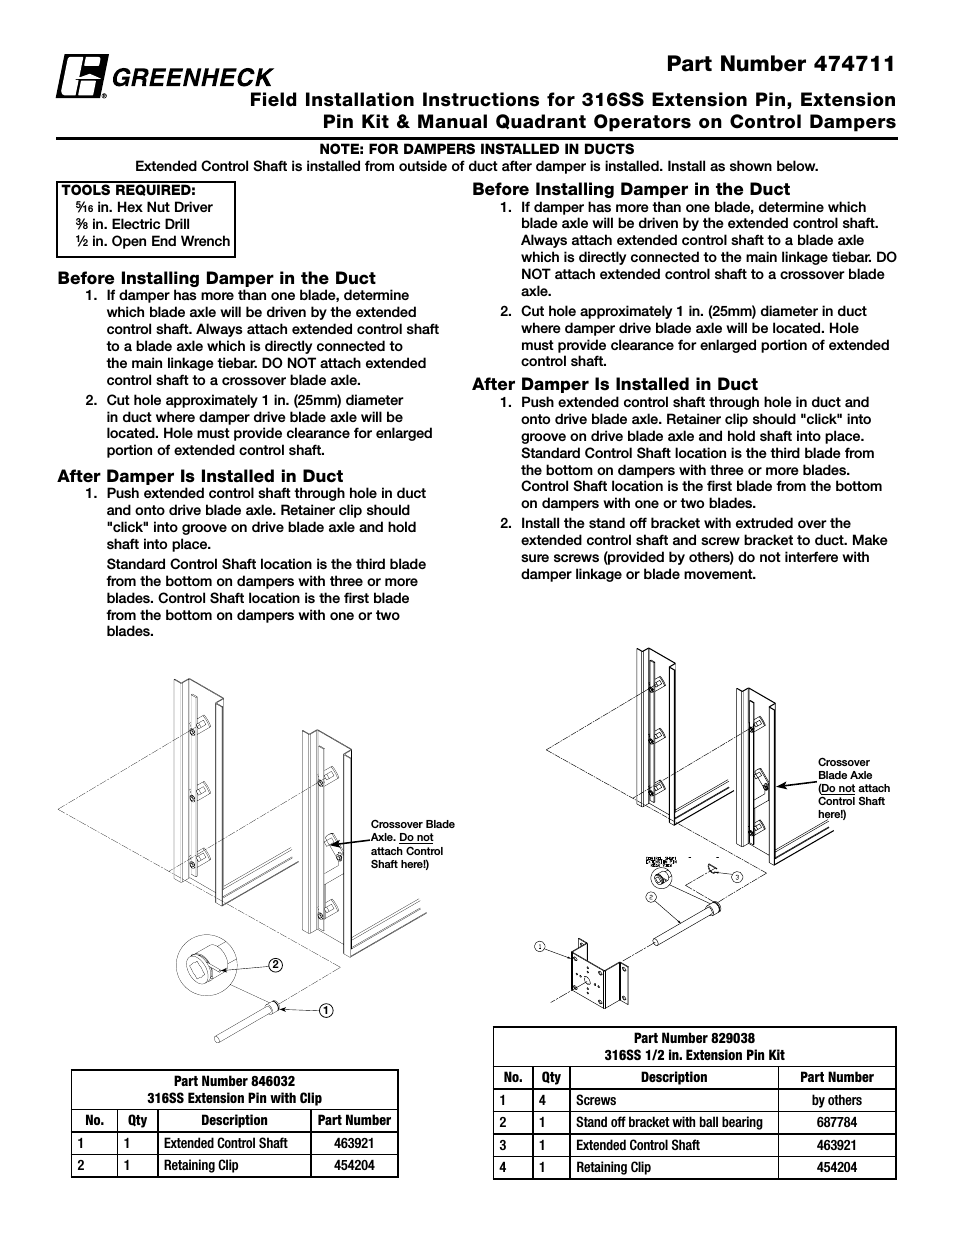 Extension Pin Kit & Manual Quadrant Kit (455049)